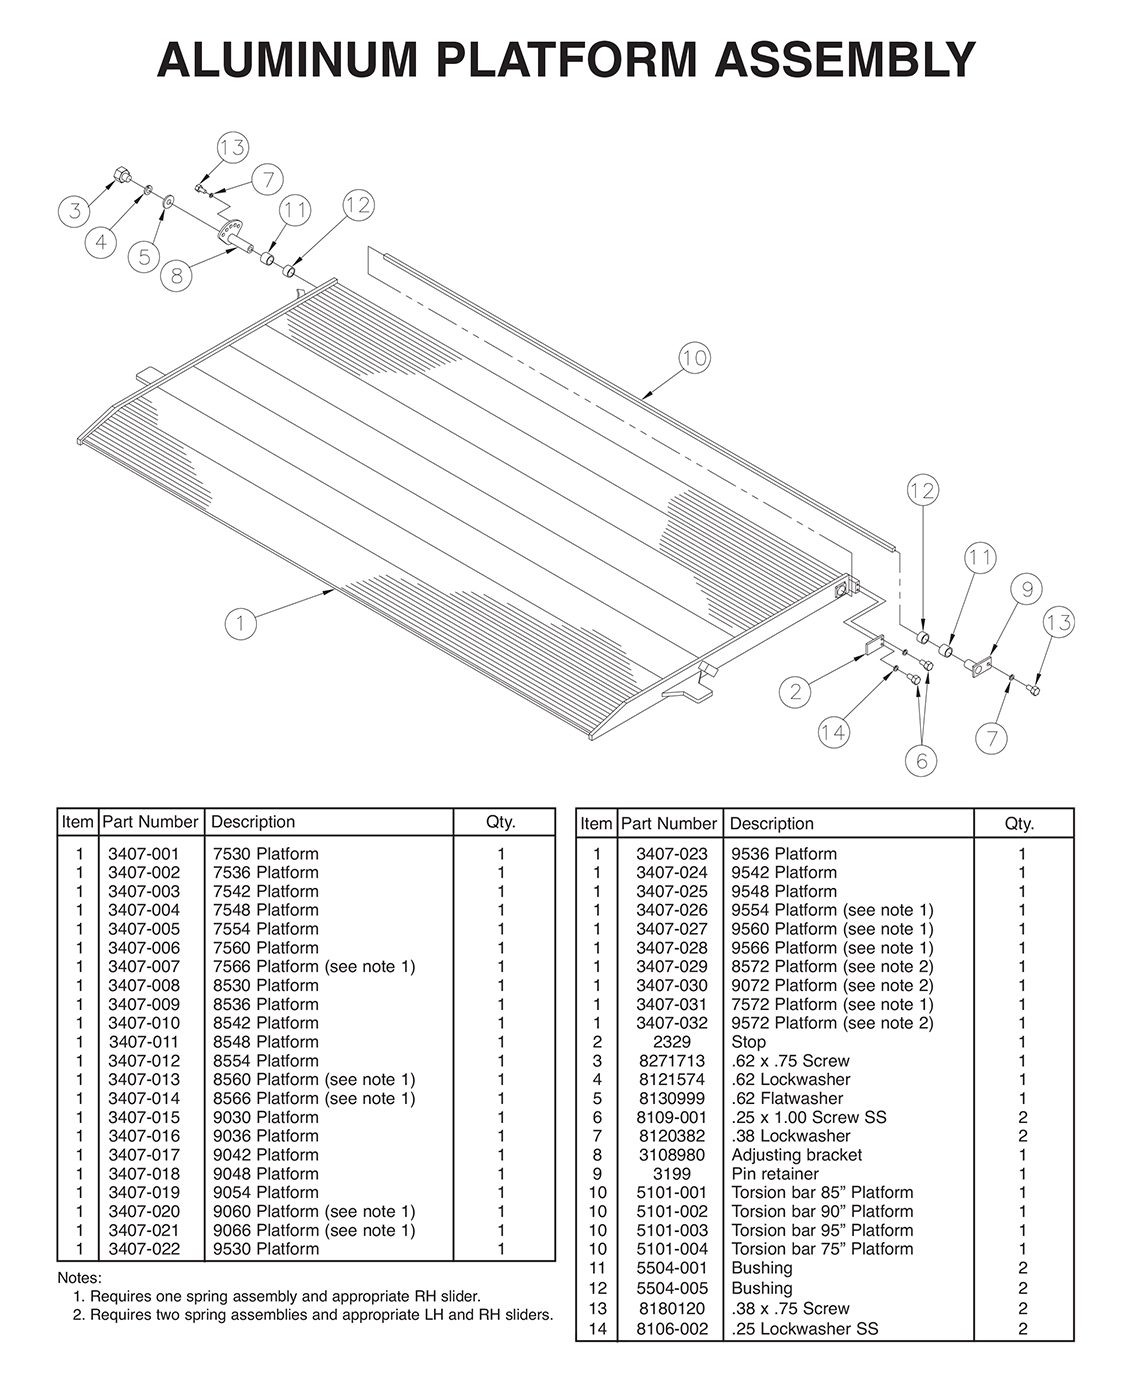 TVLR125/16 And TVLR125A/16A Aluminum Platform Assembly Diagram